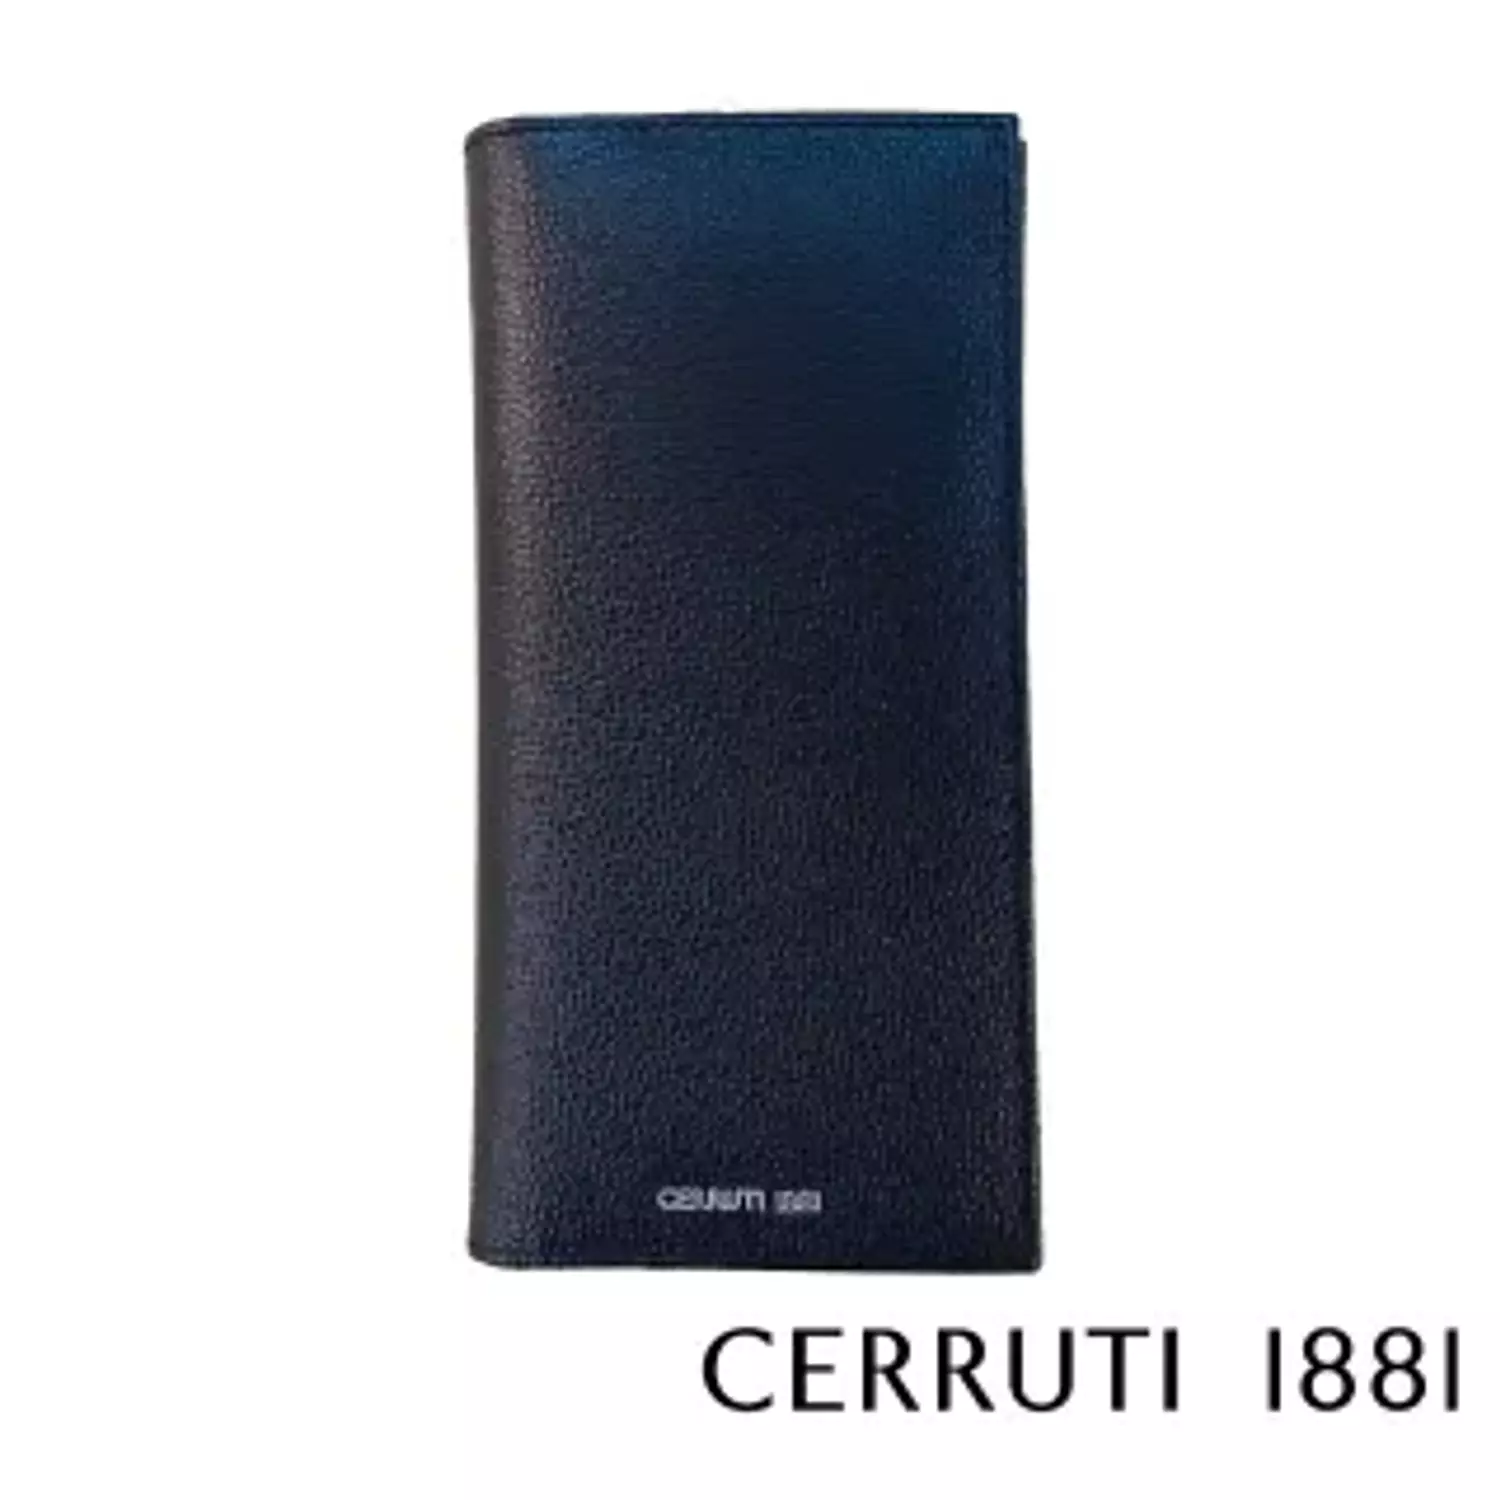 Cerruti1881 - Wallet For Men Calf Leather Black - CEPU05398M hover image